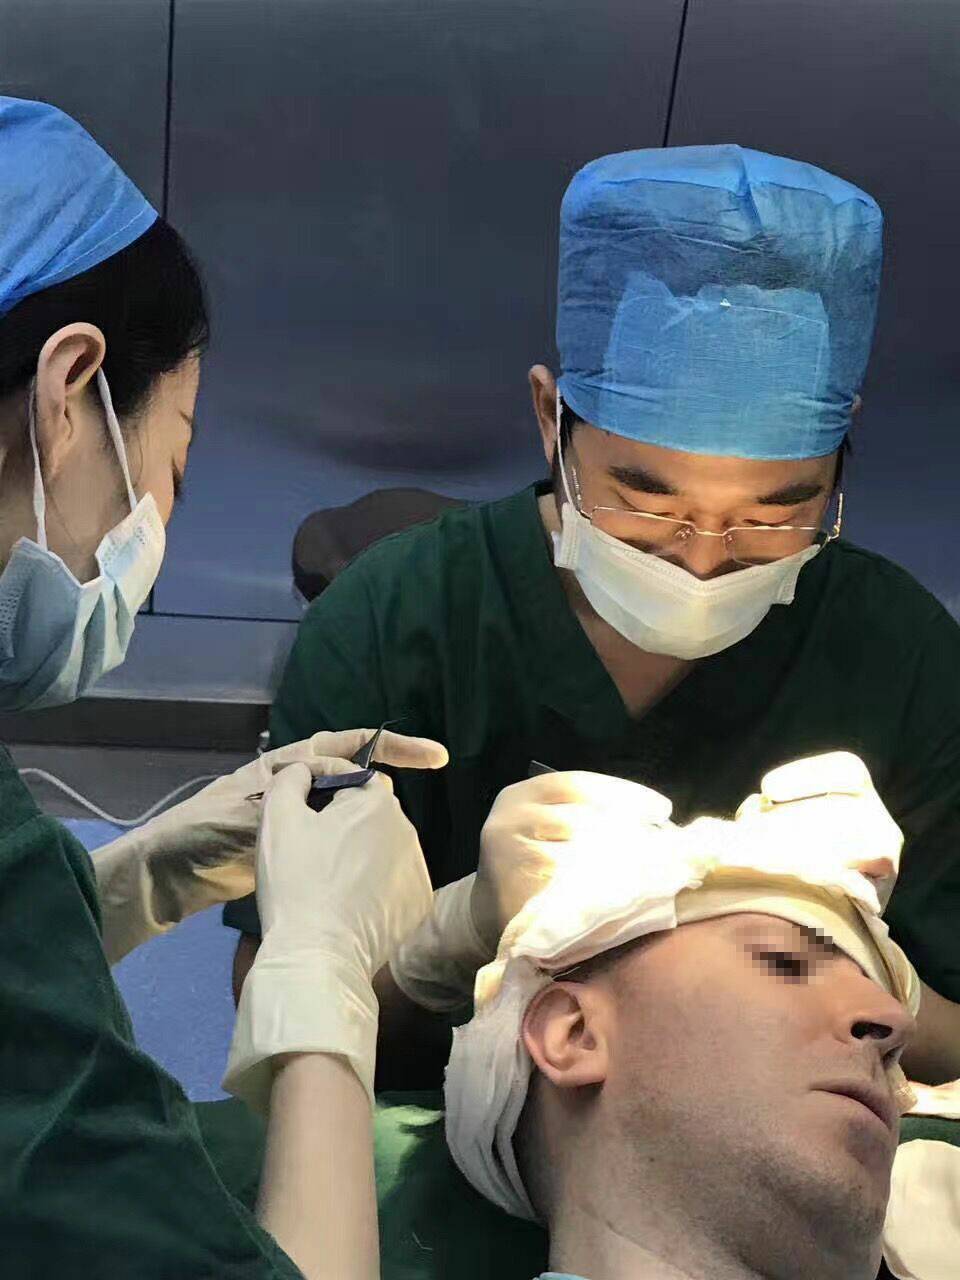 多年的植发手术经验,数万的精品案例,让哈市一院植发中心树立起良好的